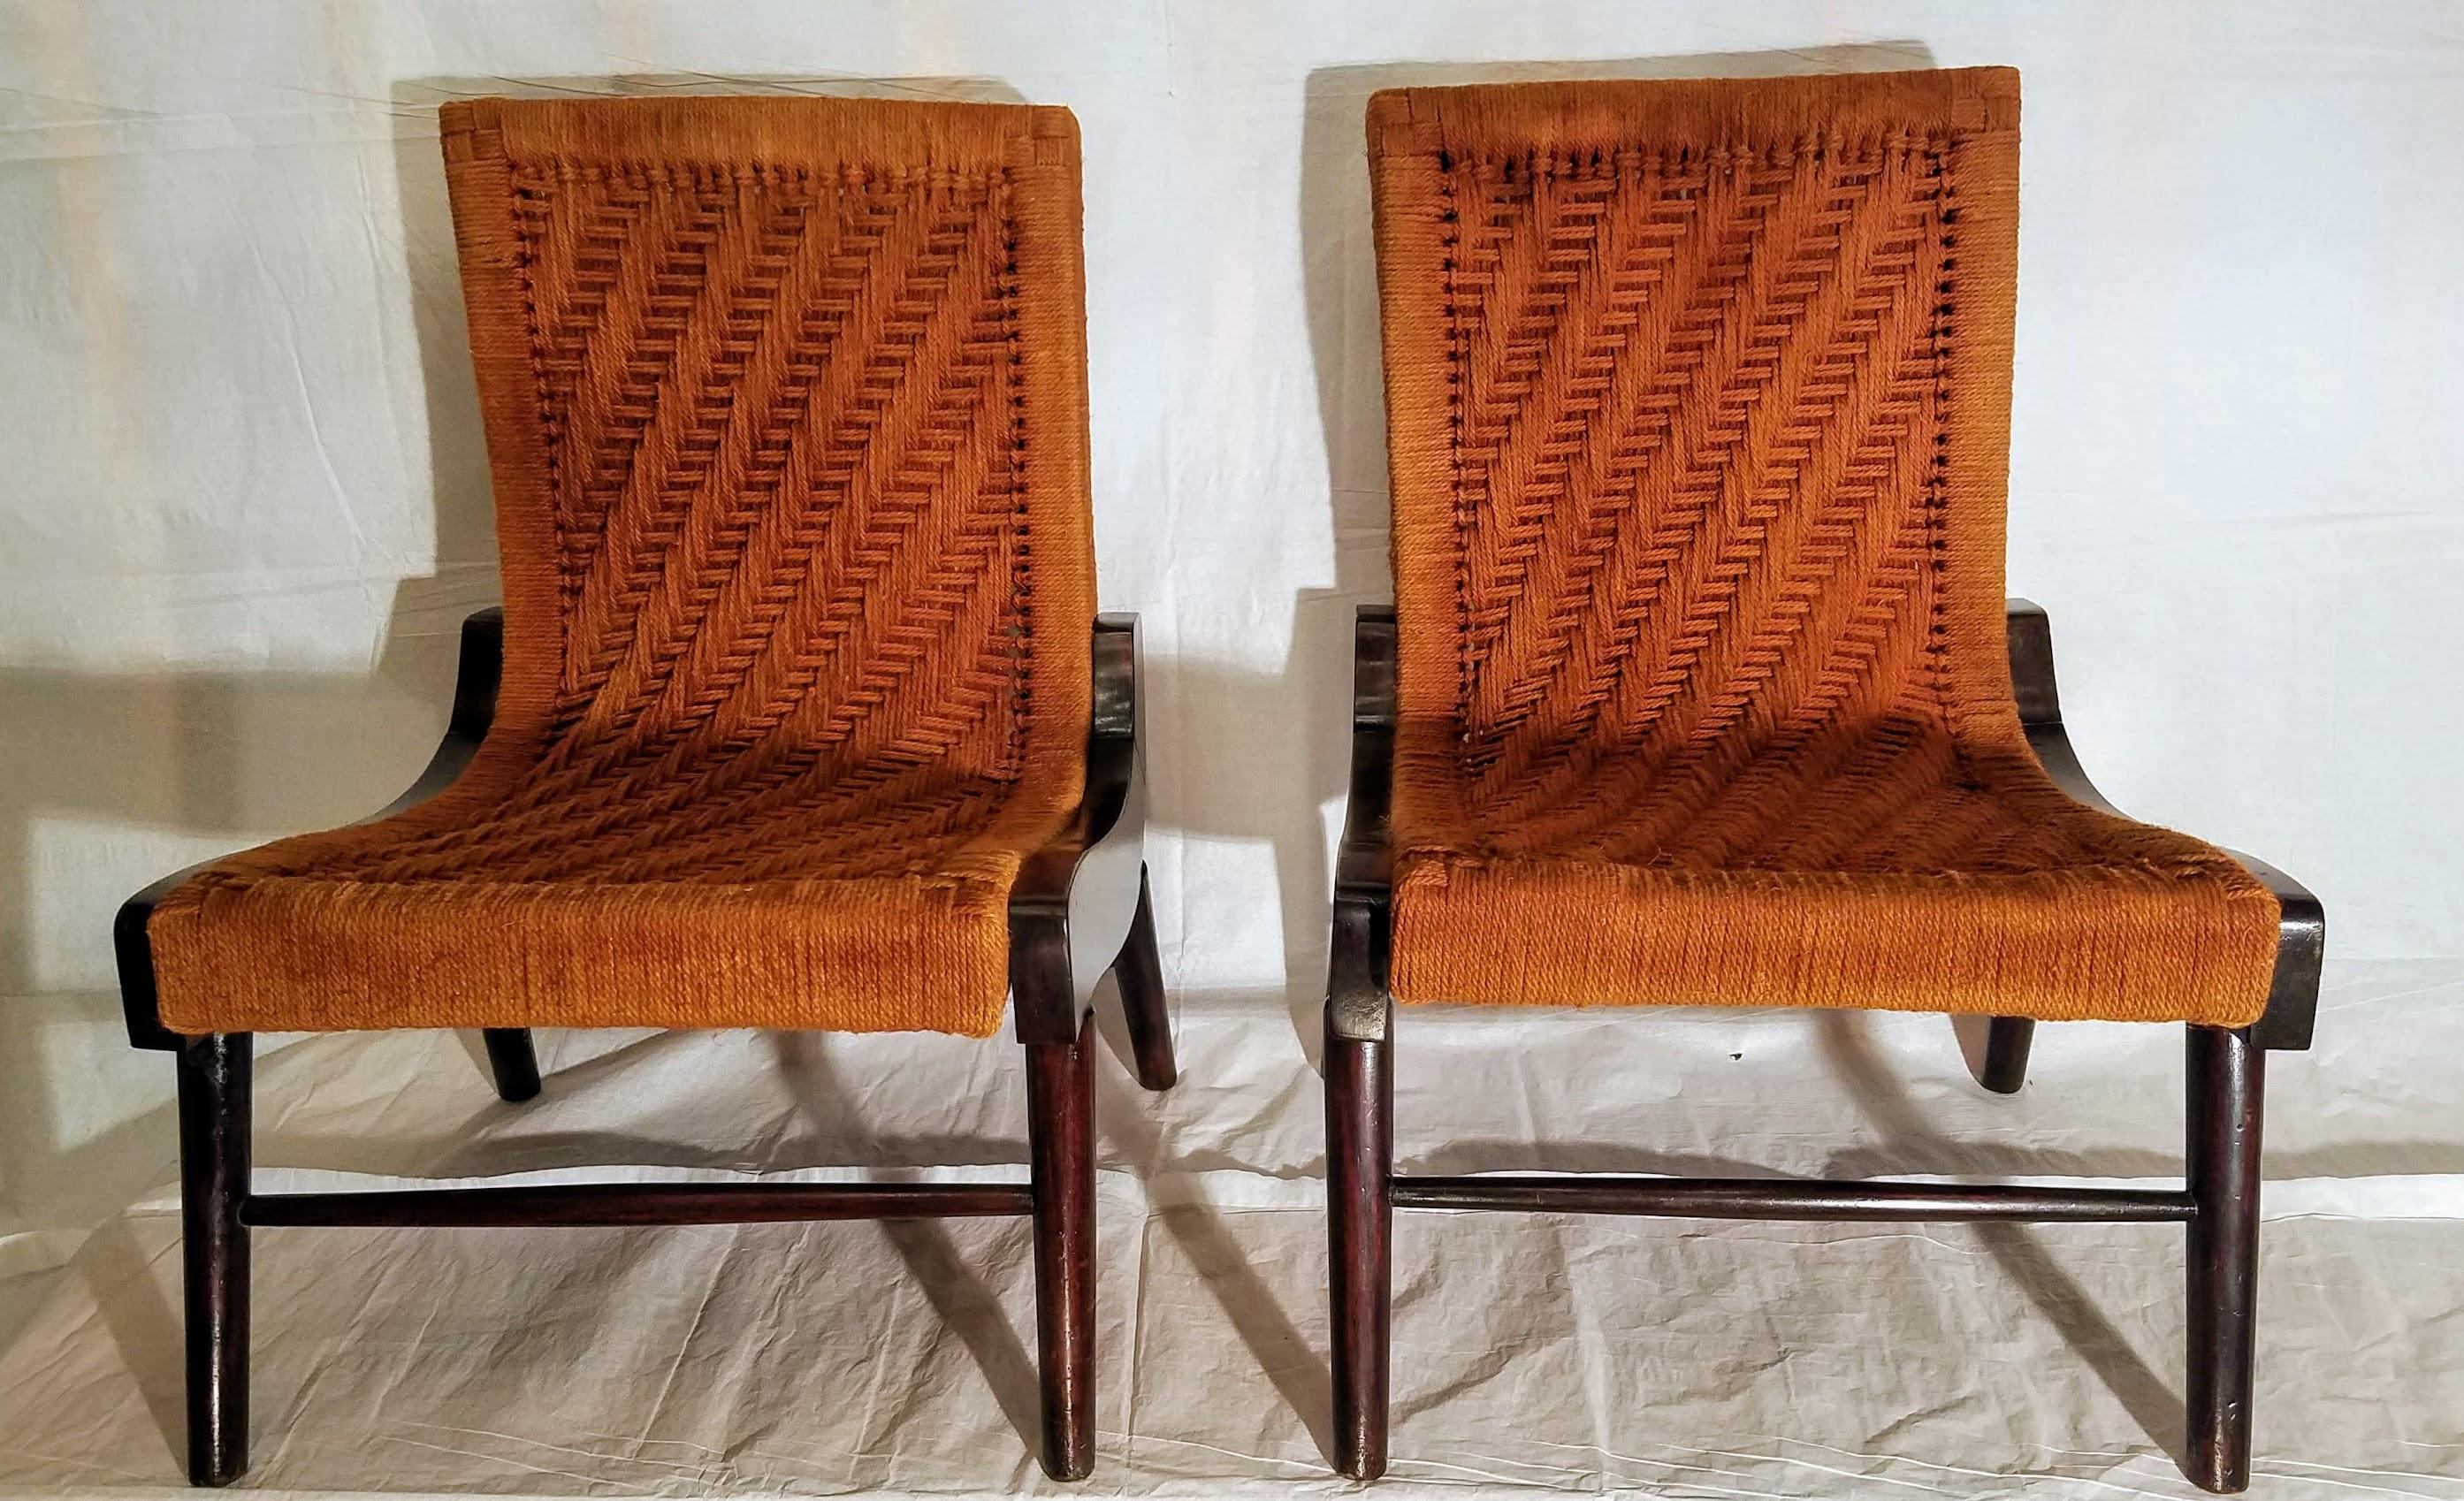 Ein Paar seltener südamerikanischer Sessel aus Cocobolo-Palisanderholz, umwickelt mit Hanfschnur im Fischgrätenmuster.
Die Stühle wurden von einem OSS-Offizier, der während des Zweiten Weltkriegs in Mittelamerika stationiert war, nach Virginia